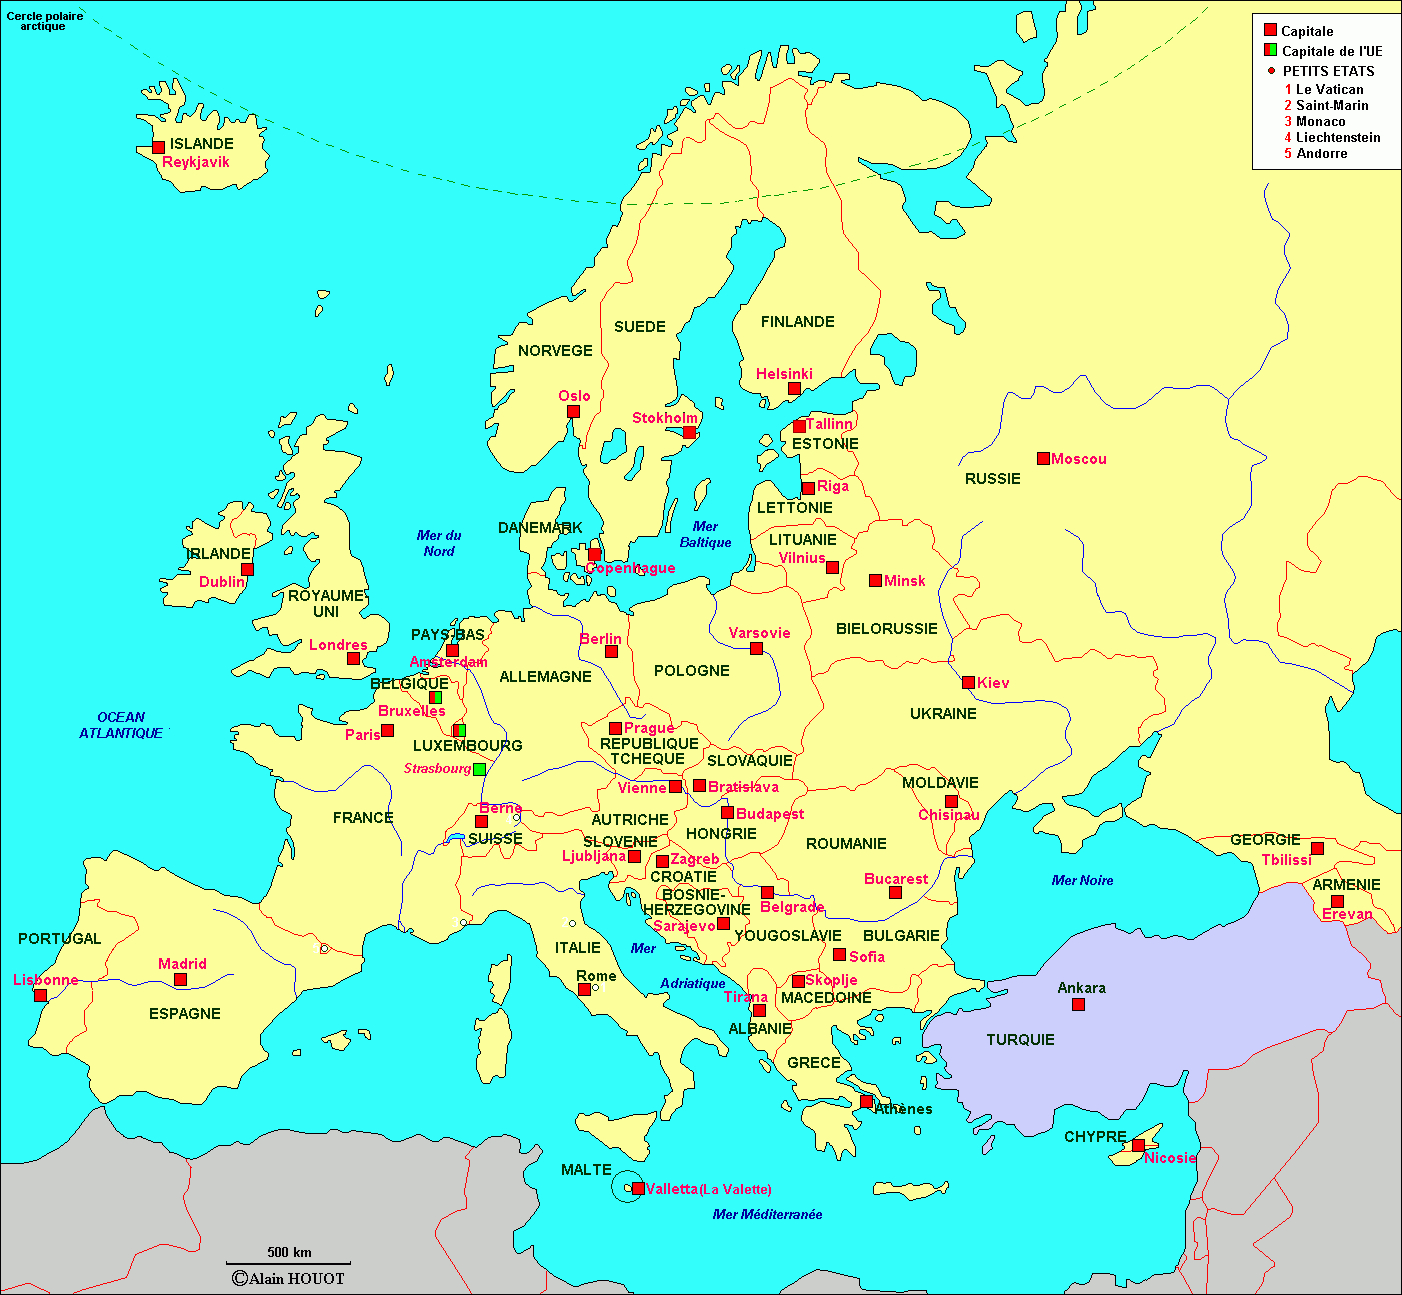 Archives Des Carte Europe Capitales - Arts Et Voyages dedans Pays Union Europeenne Carte 2021 Jeu 